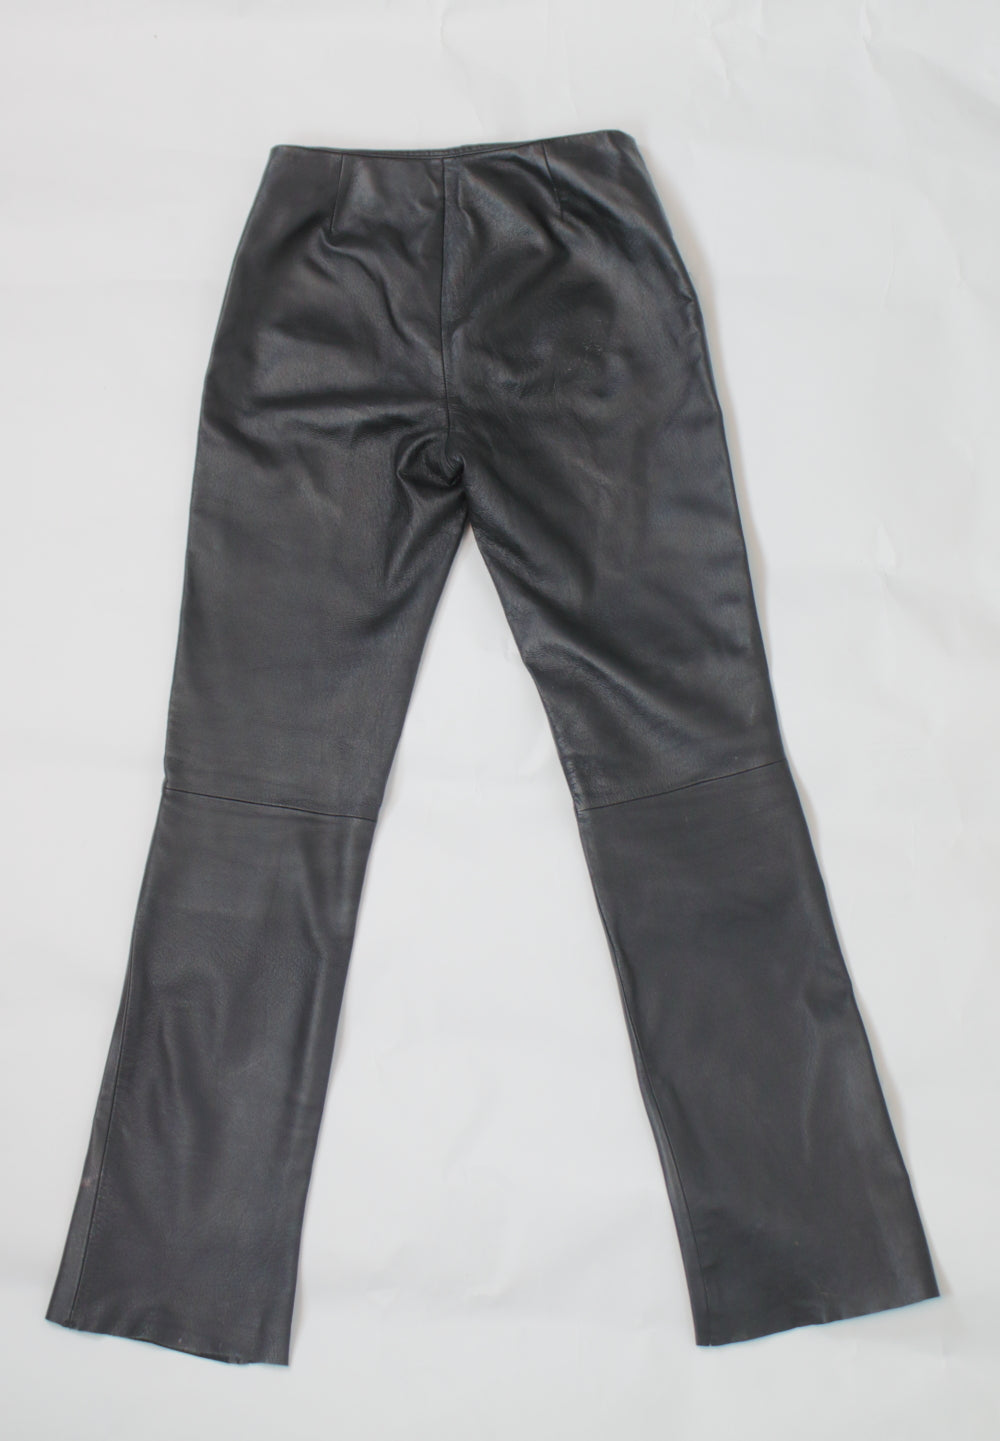 T.A.L.C. Leather Pants